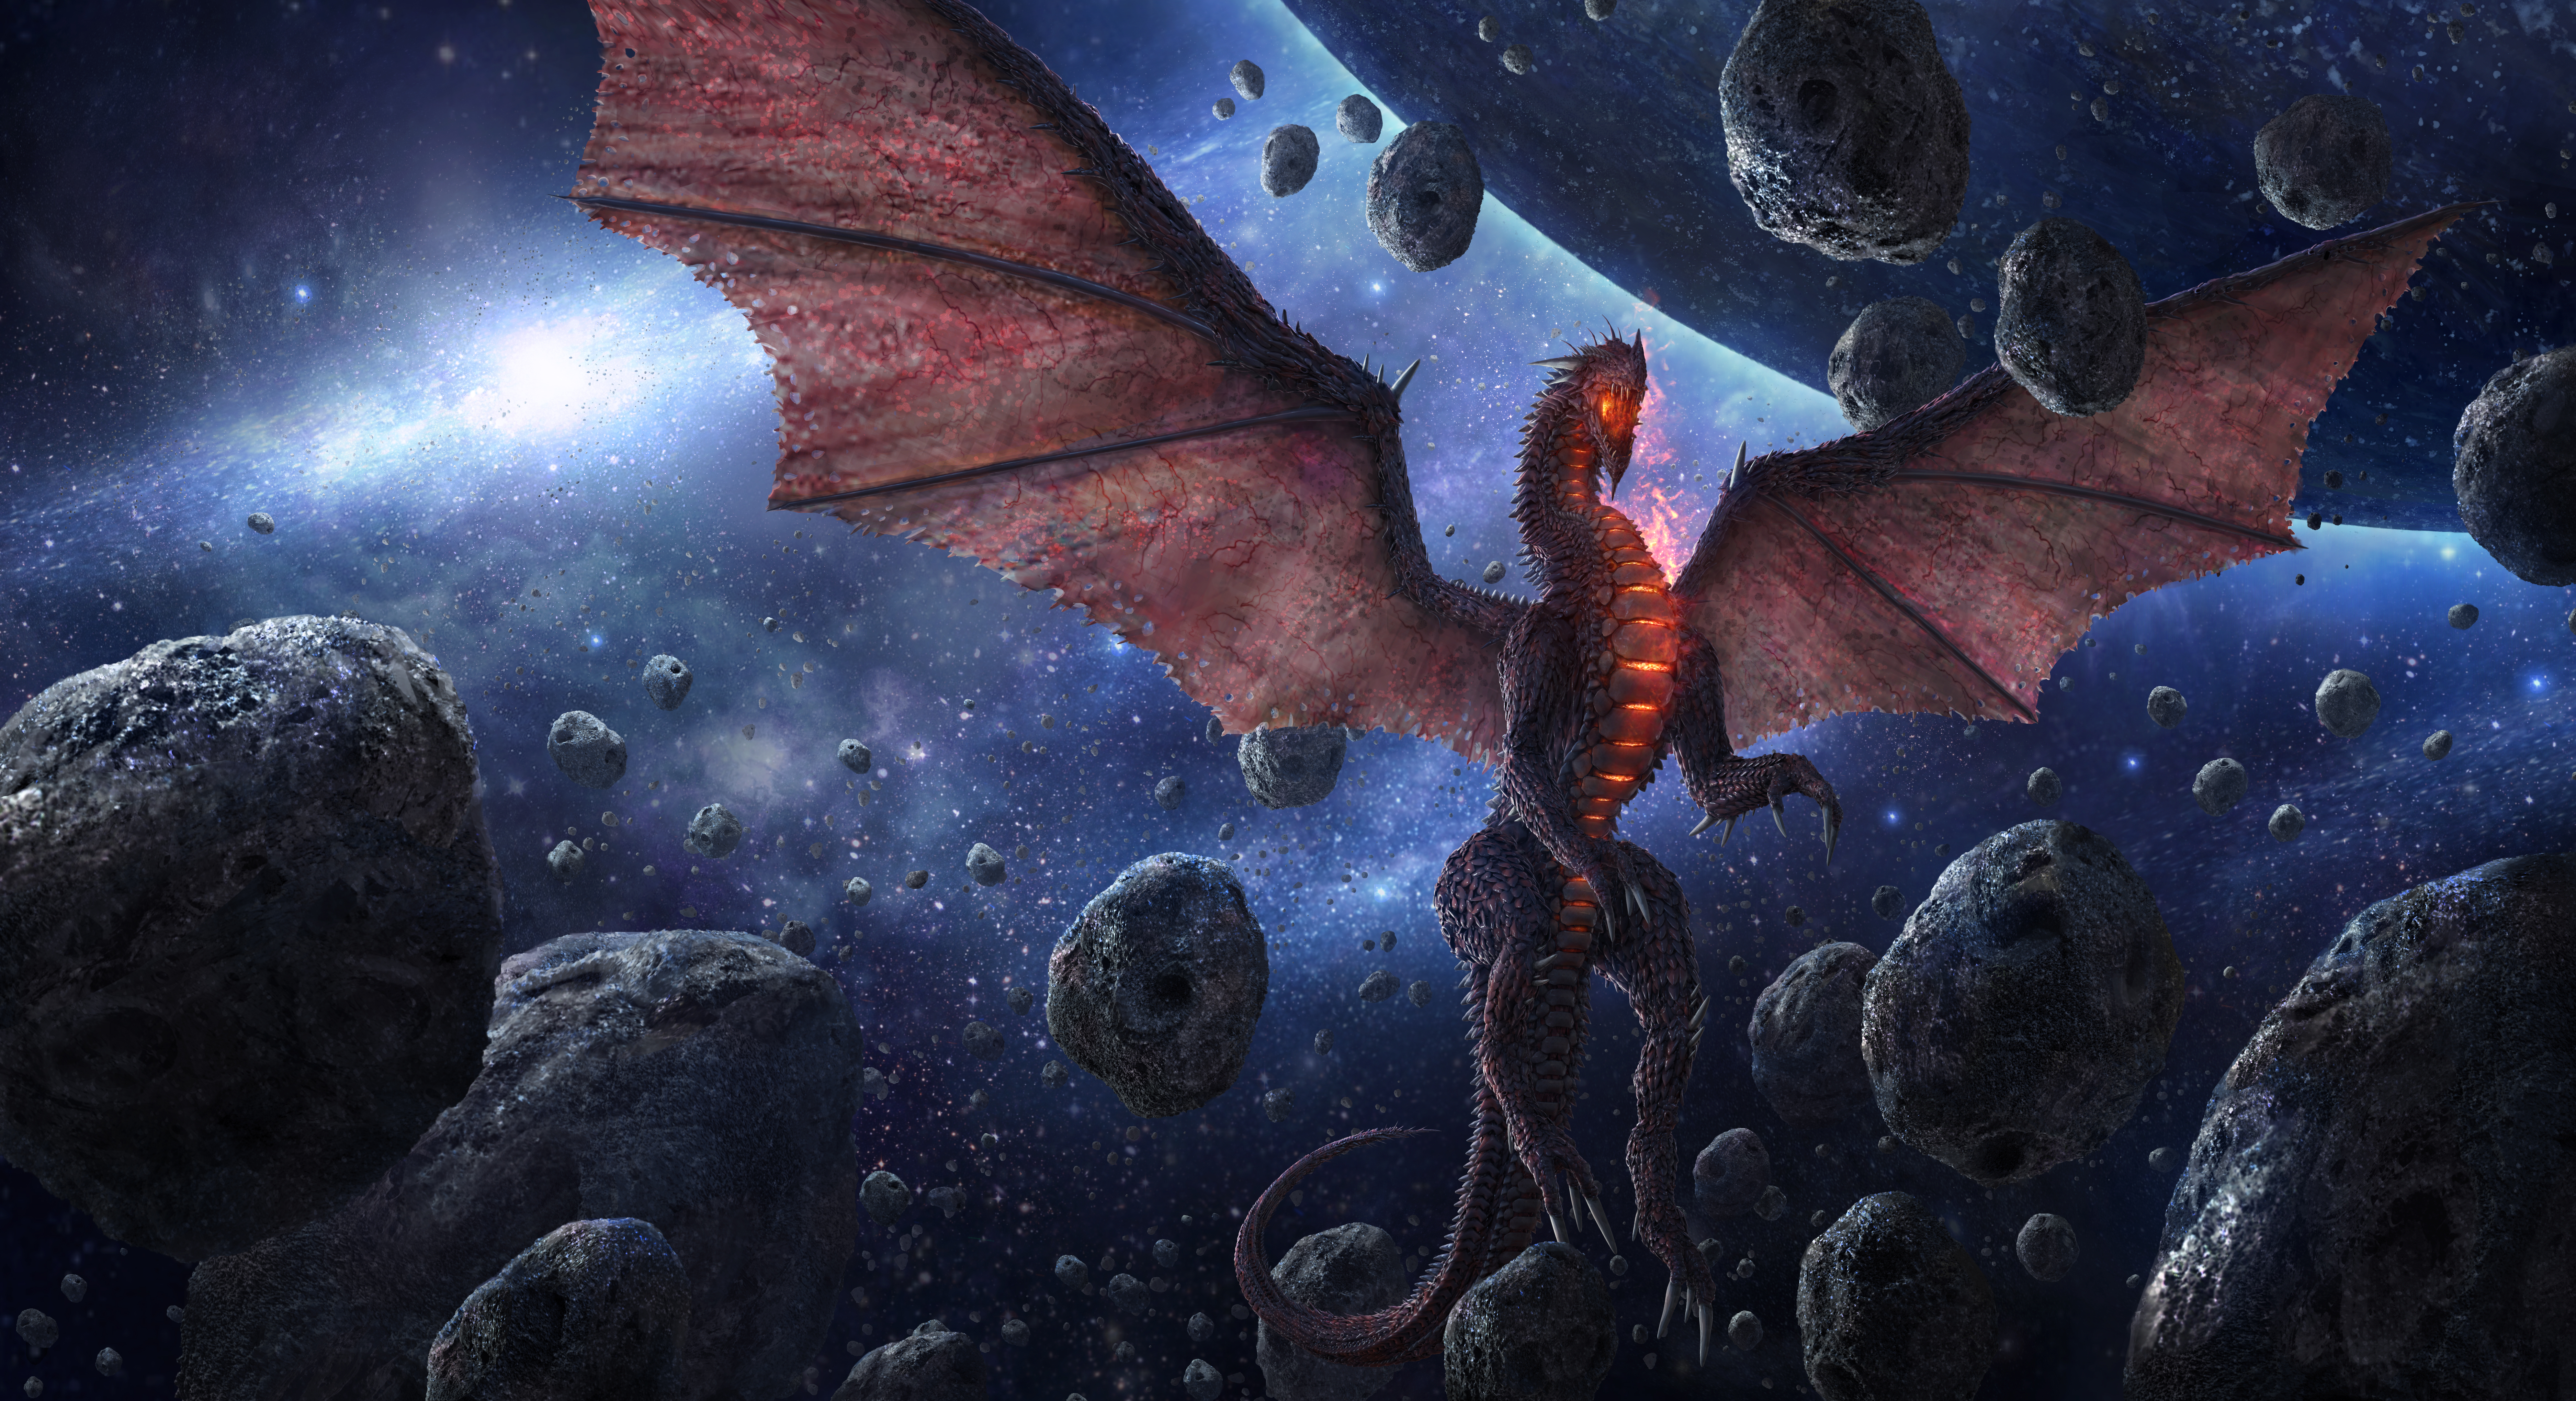 Fantasy Dragon 8k Ultra HD Wallpaper by tekkoontan